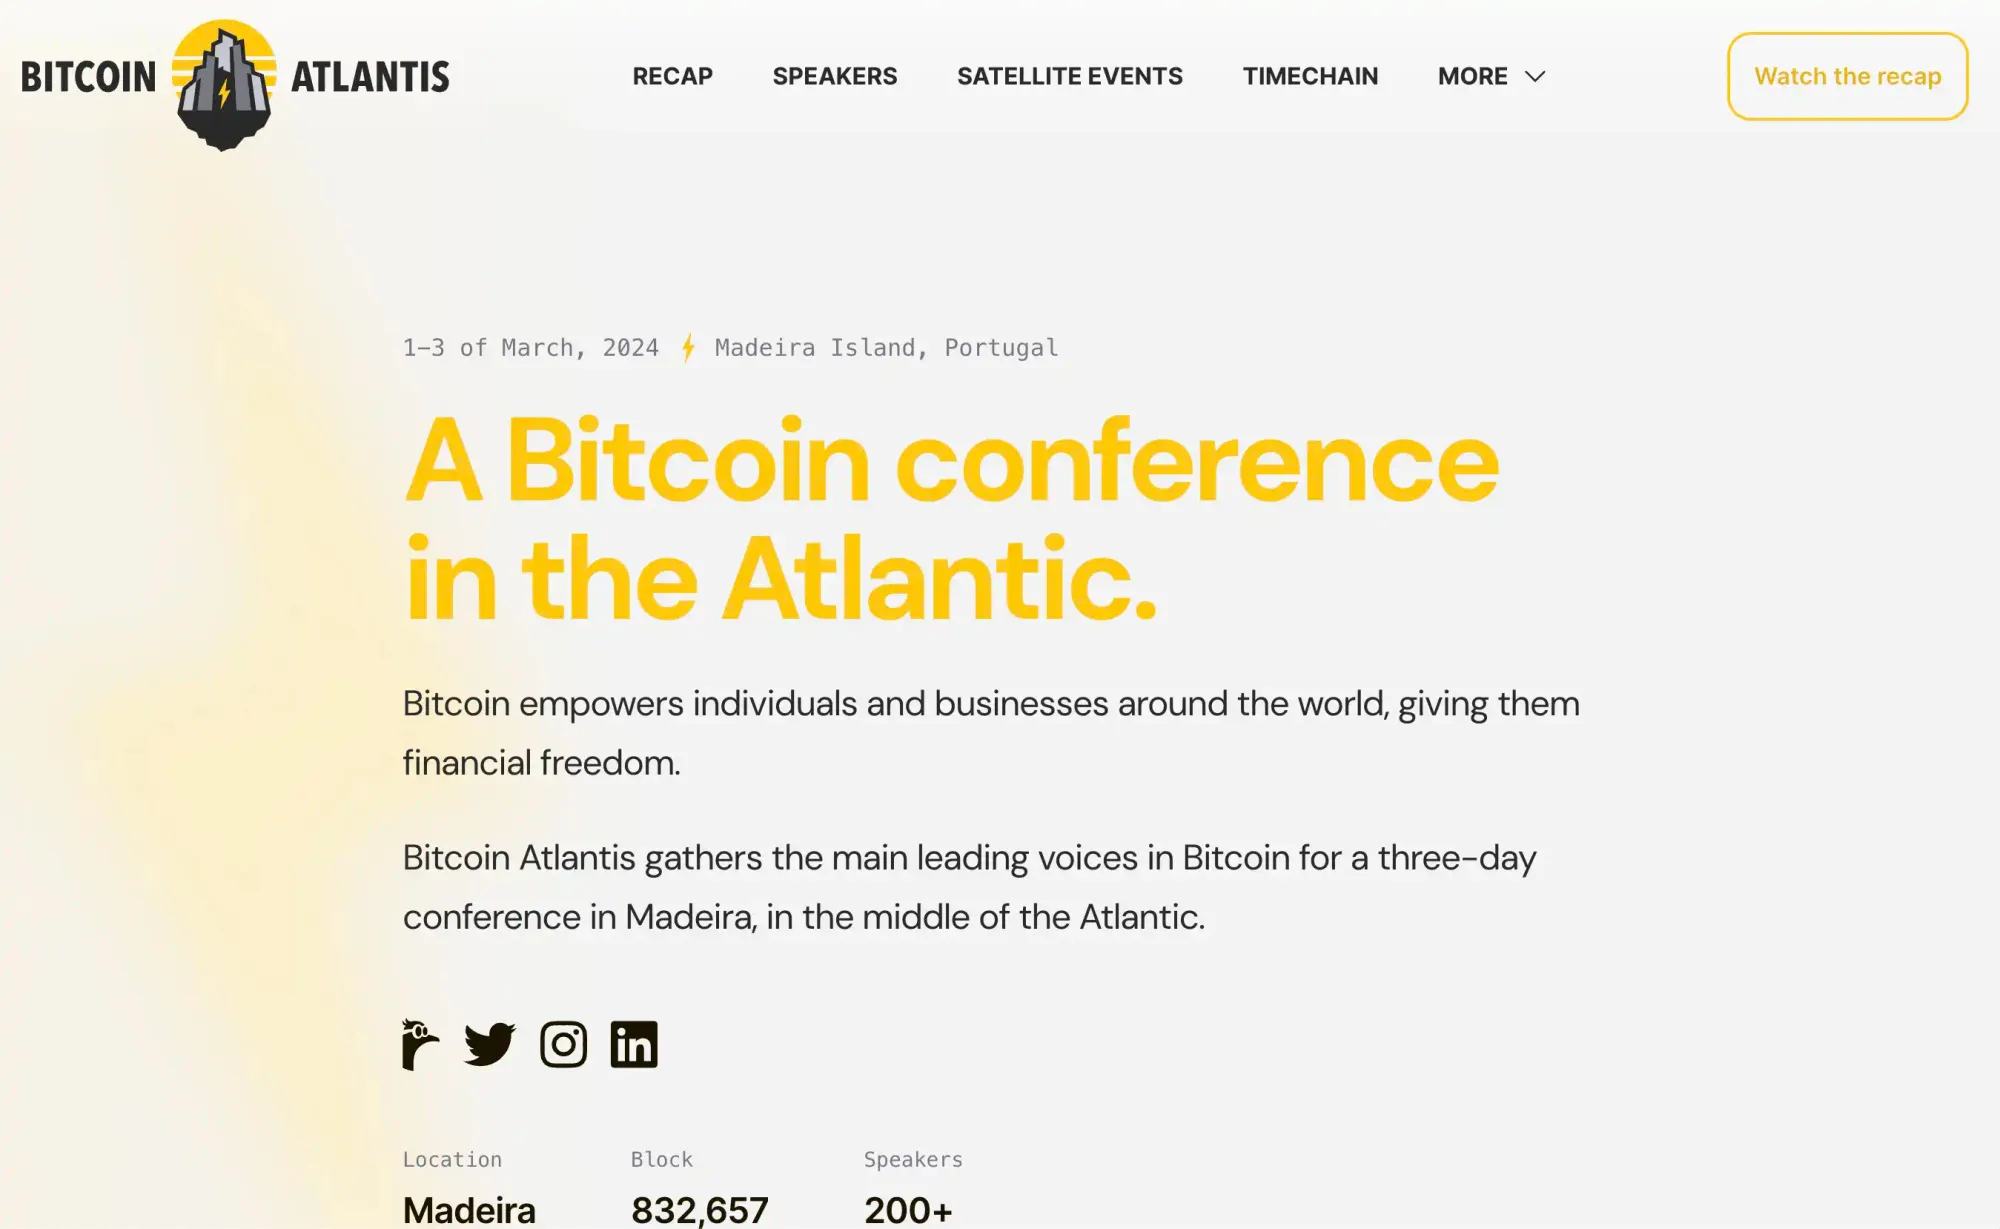 Bitcoin Atlantis